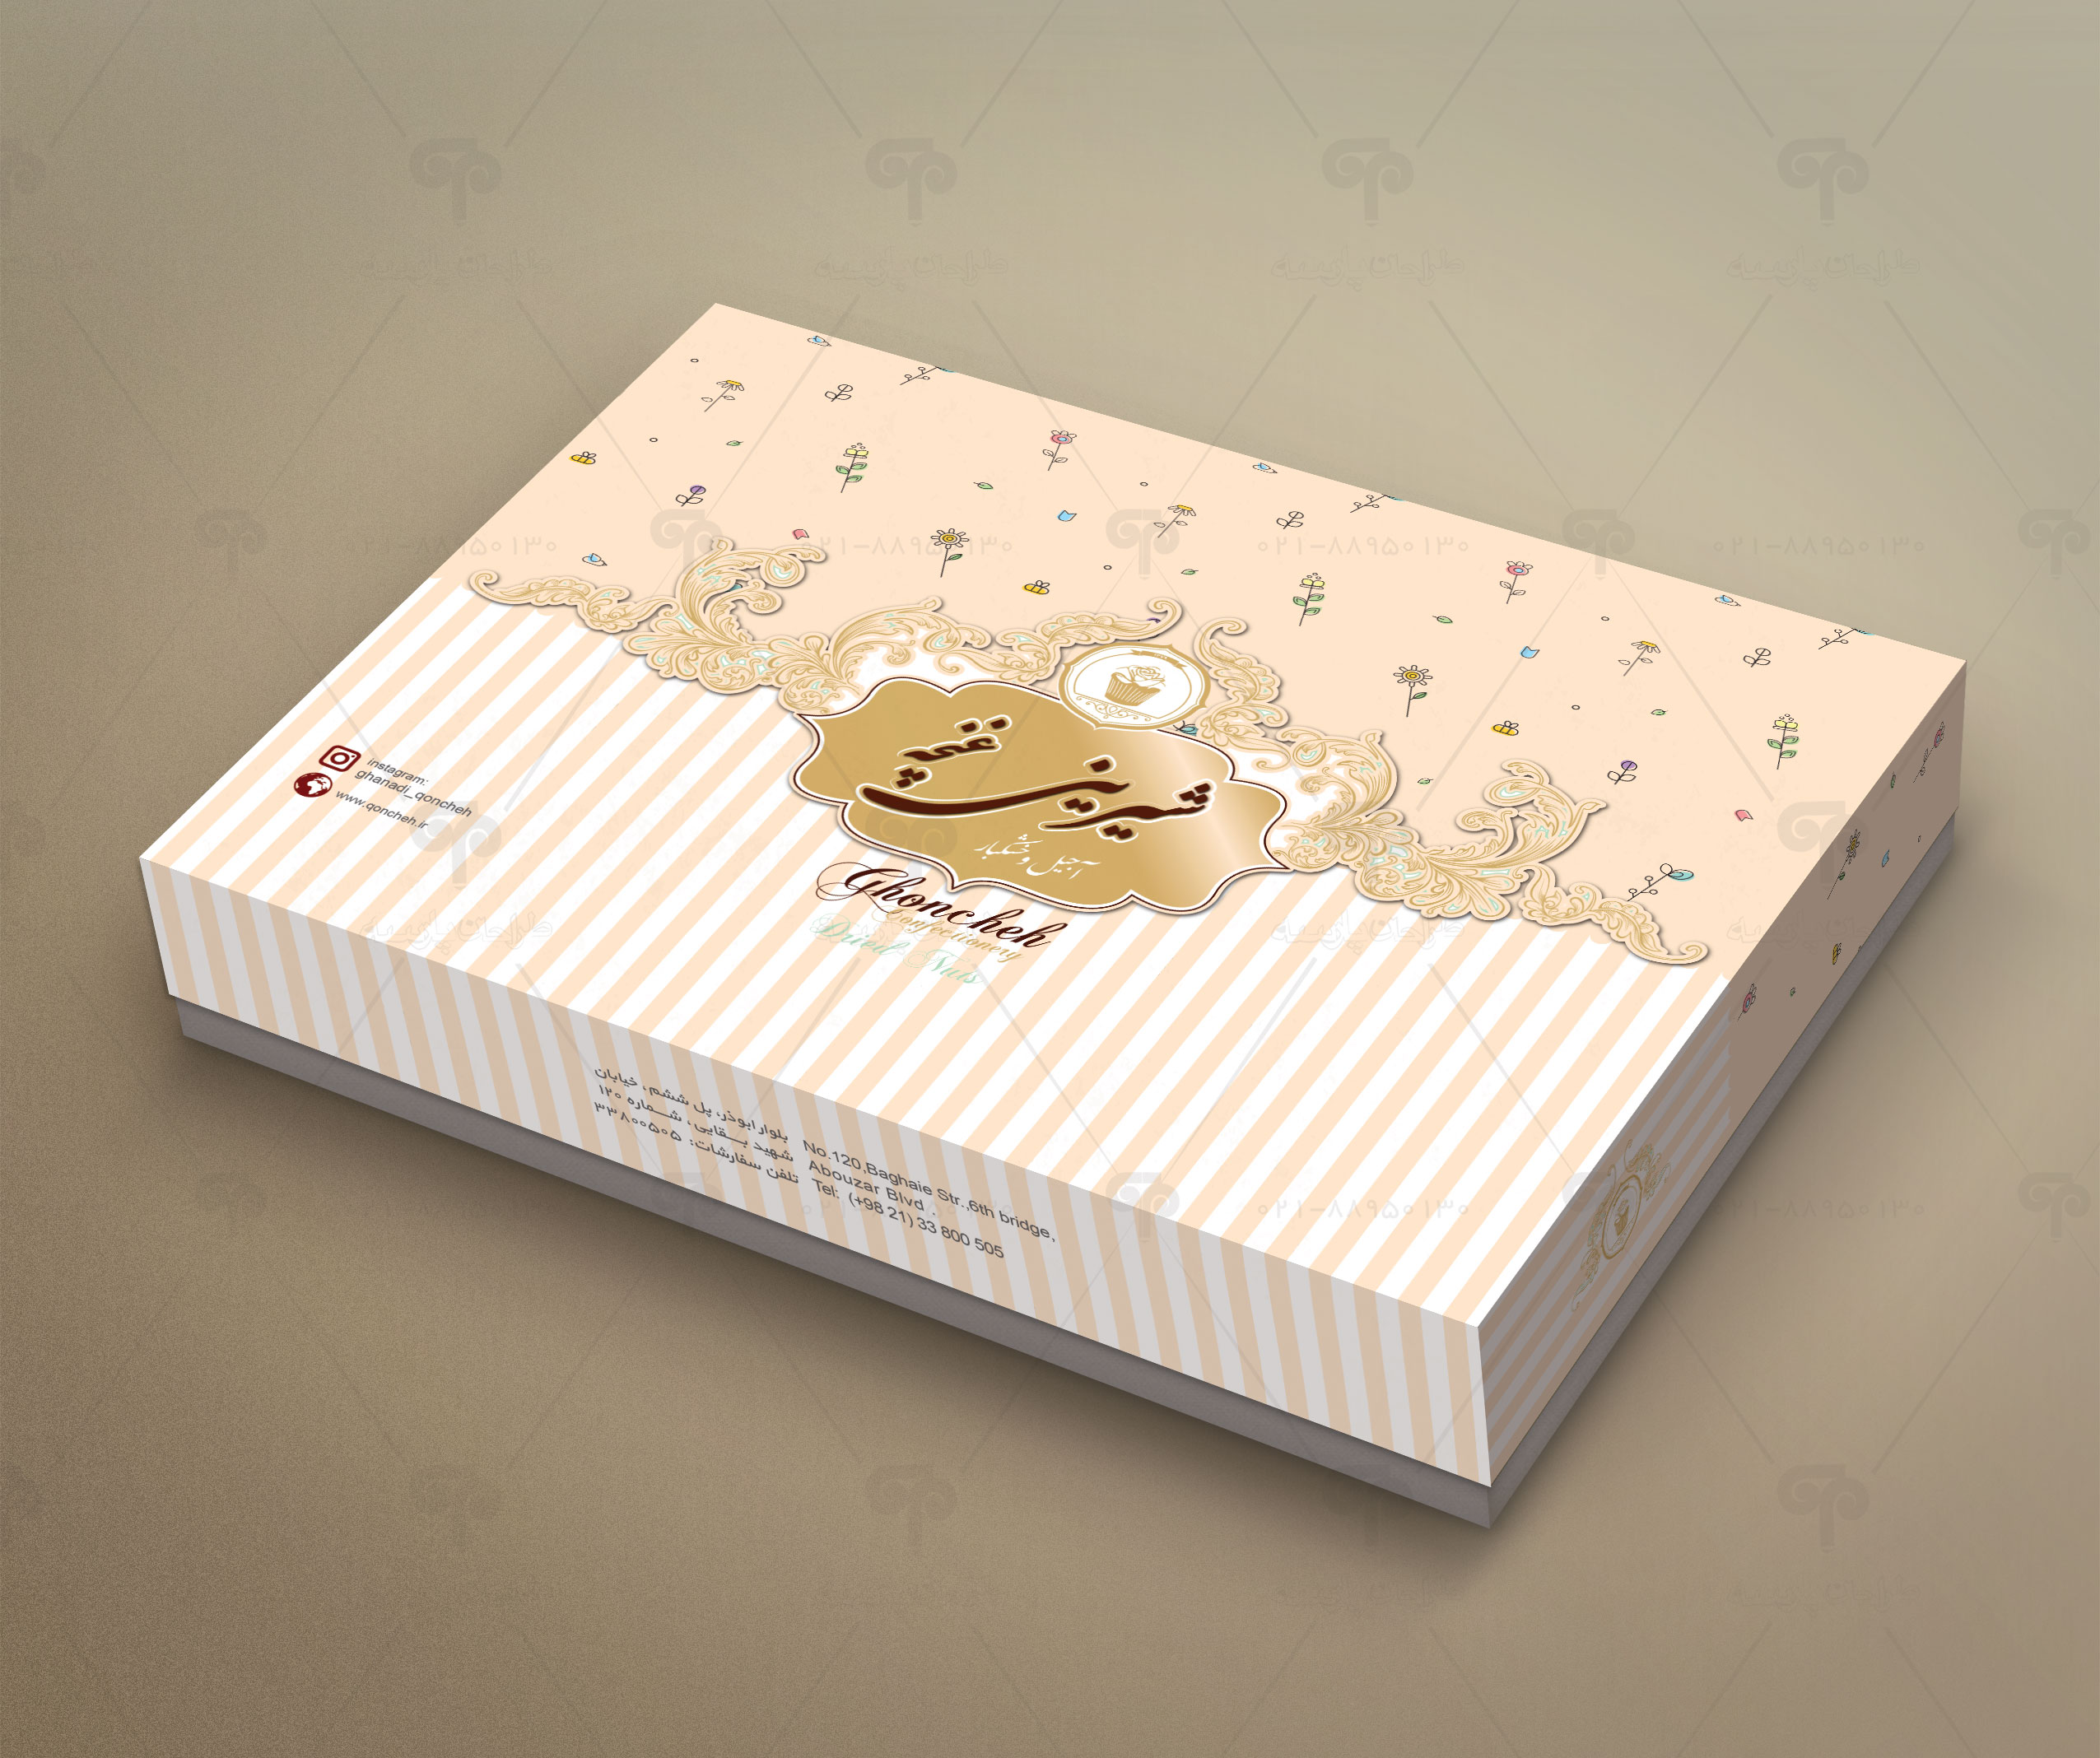 طراحی جعبه شیرینی غنچه3